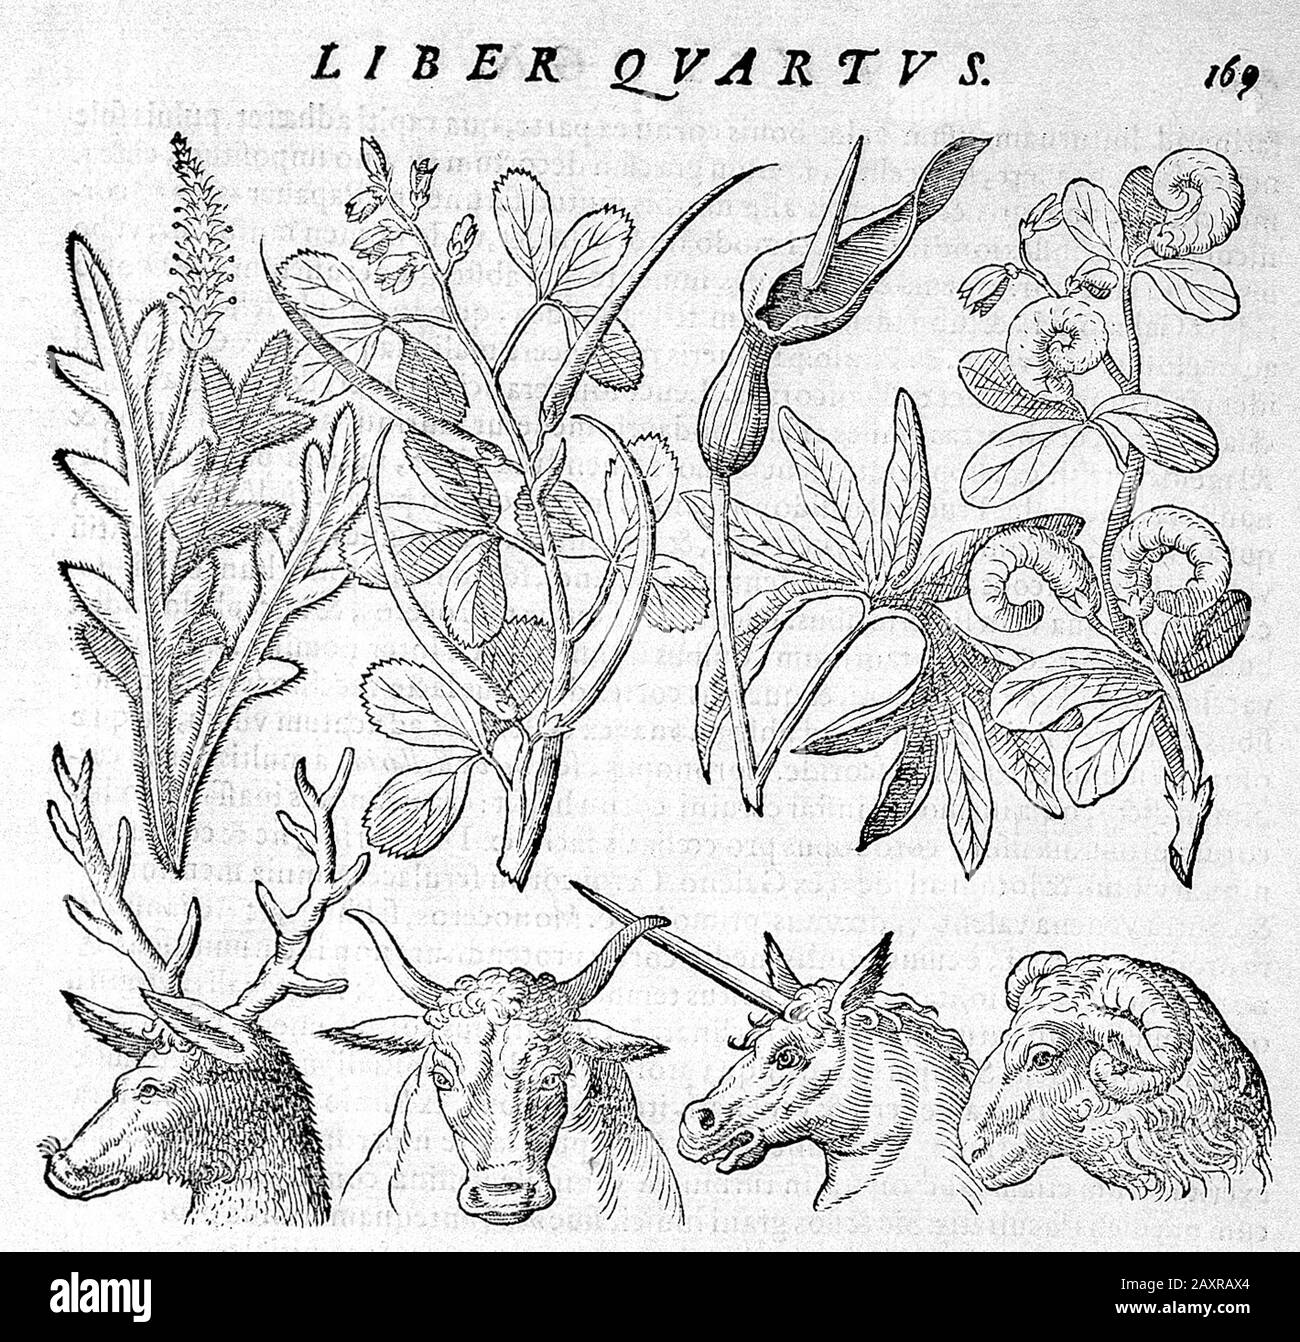 1588, ITALIA : il celebre filosofo italiano , polimath , occultista ,  drammaturgo e alchimista GIOVANNI BATTISTA DELLA PORTA ( Vico Equense ,  1535 ca - Napoli, 1615 ). Incisi di piante